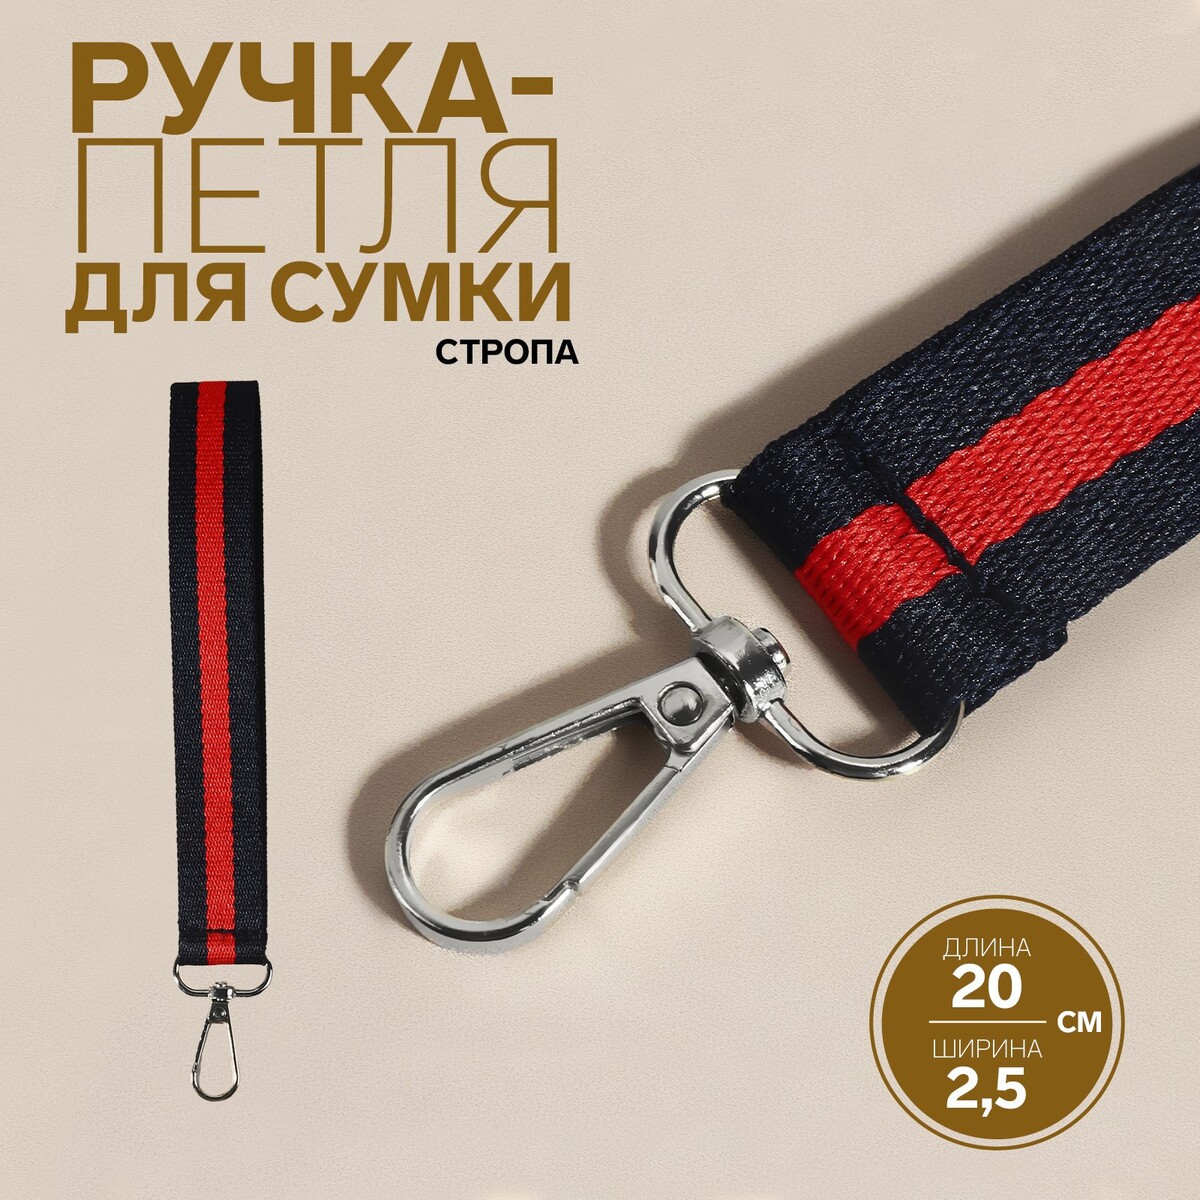 Ручка-петля для сумки, стропа, 20 × 2,5 см, цвет синий/красный ручка панорама грозный красный